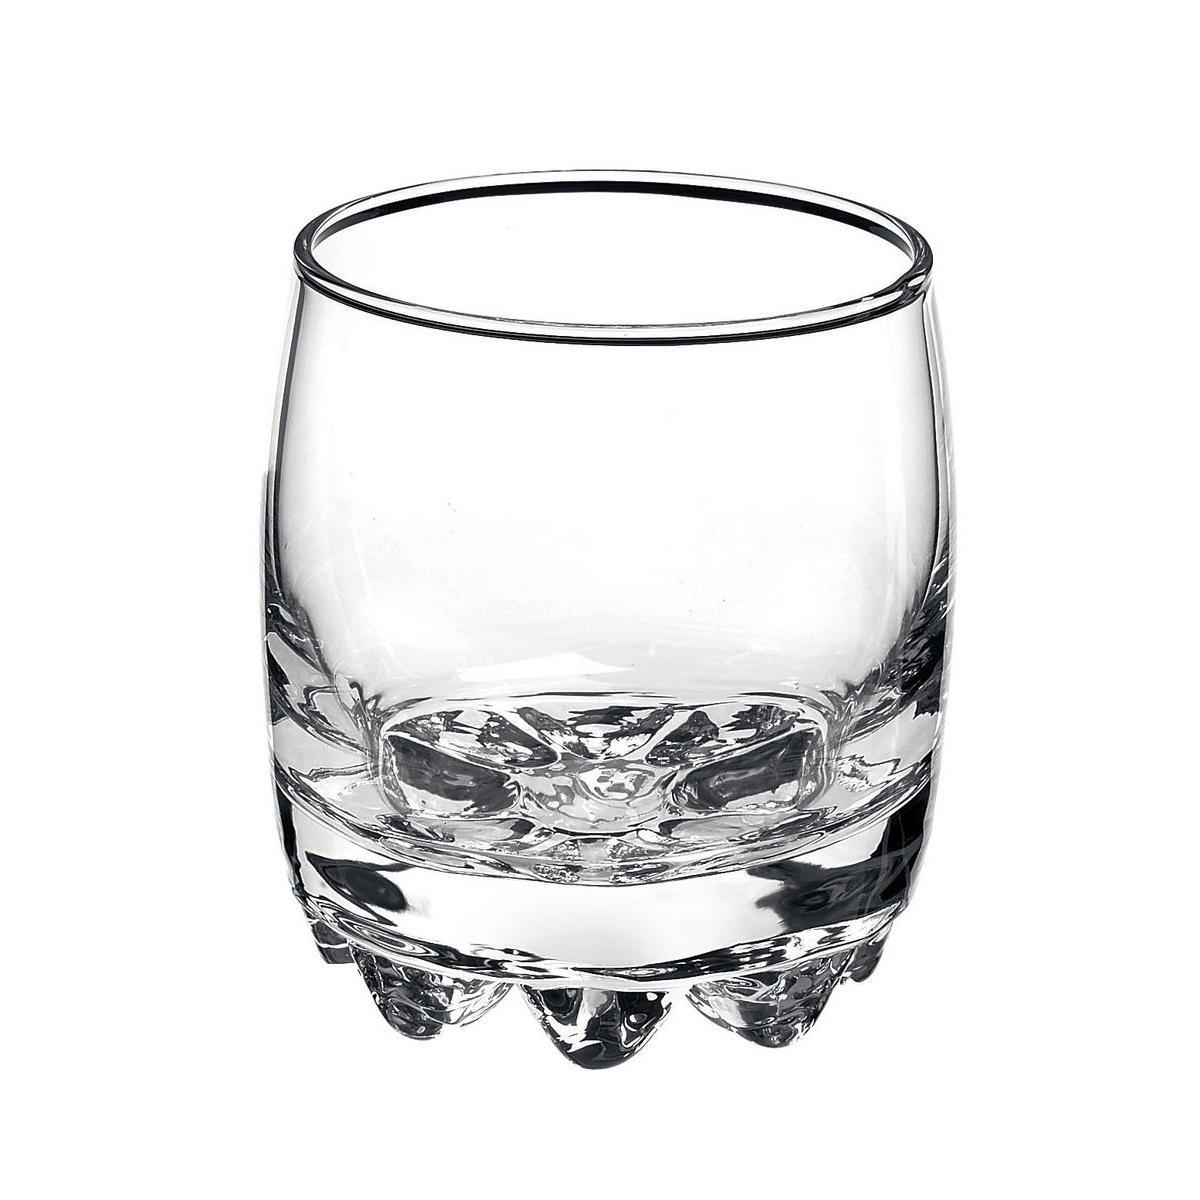 Lot de 3 gobelets à eau en verre - 30 cl - Diamètre 9 x H 7,5 cm - Blanc transparent